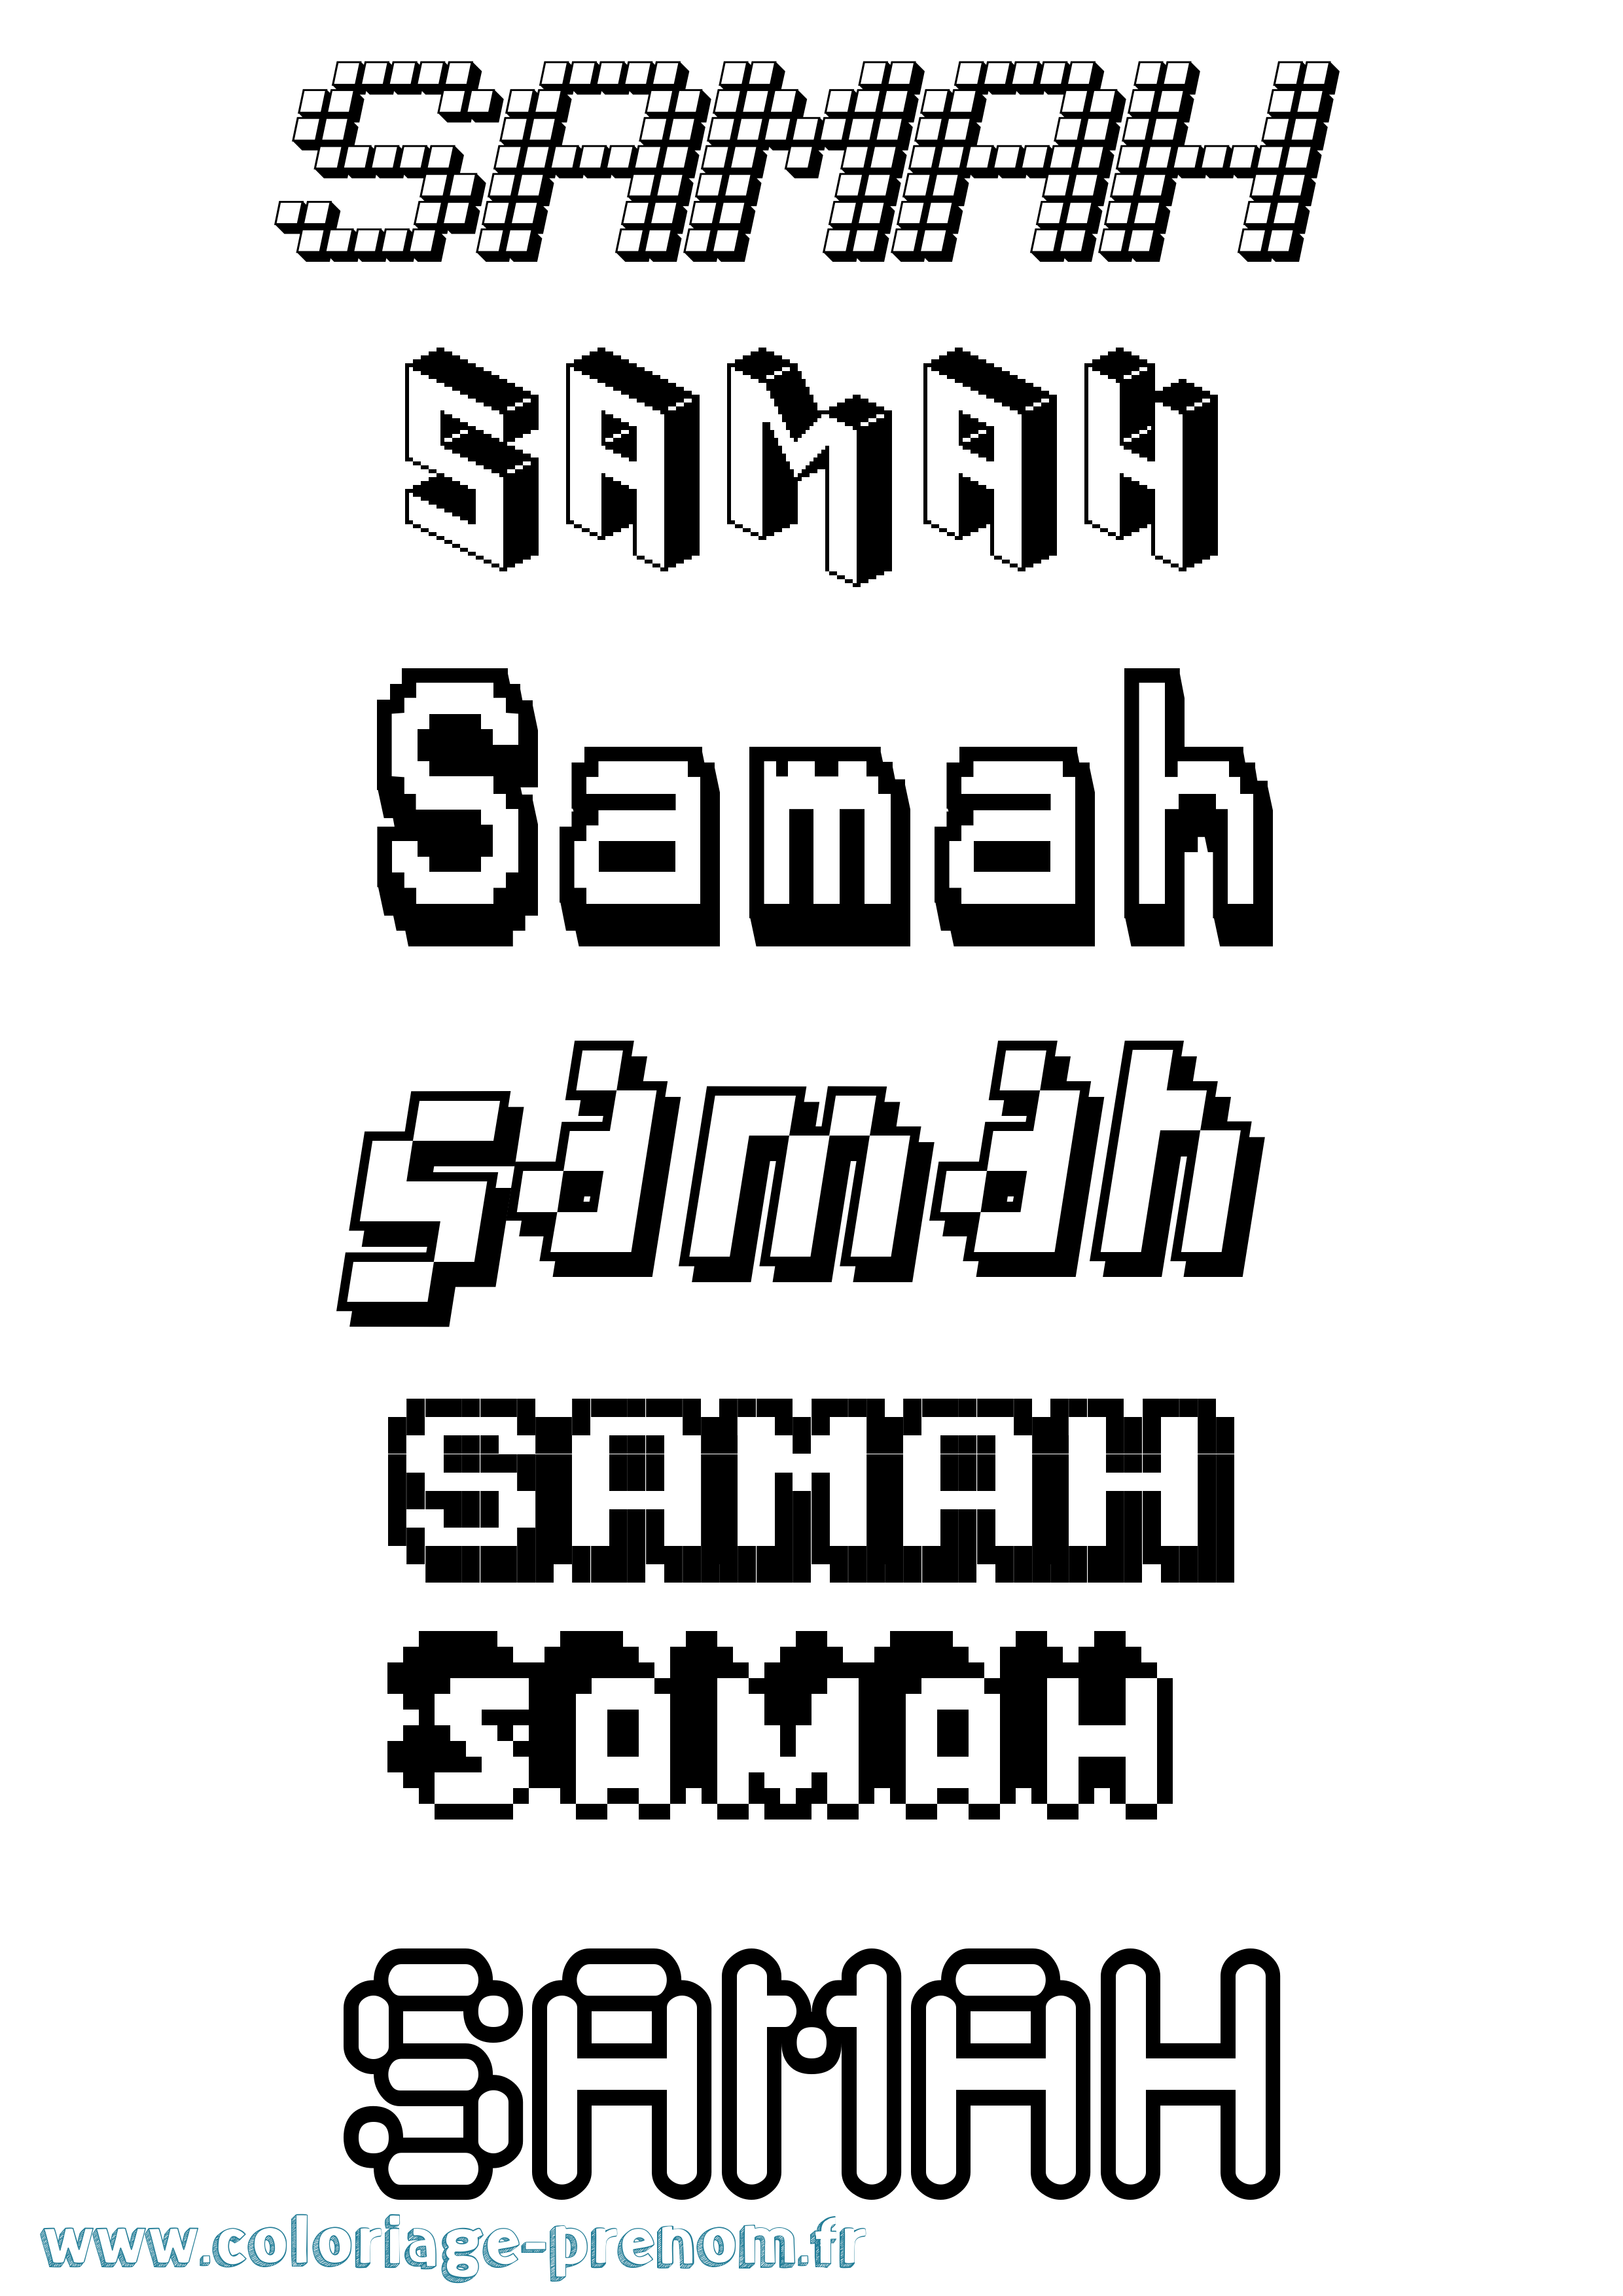 Coloriage prénom Samah Pixel